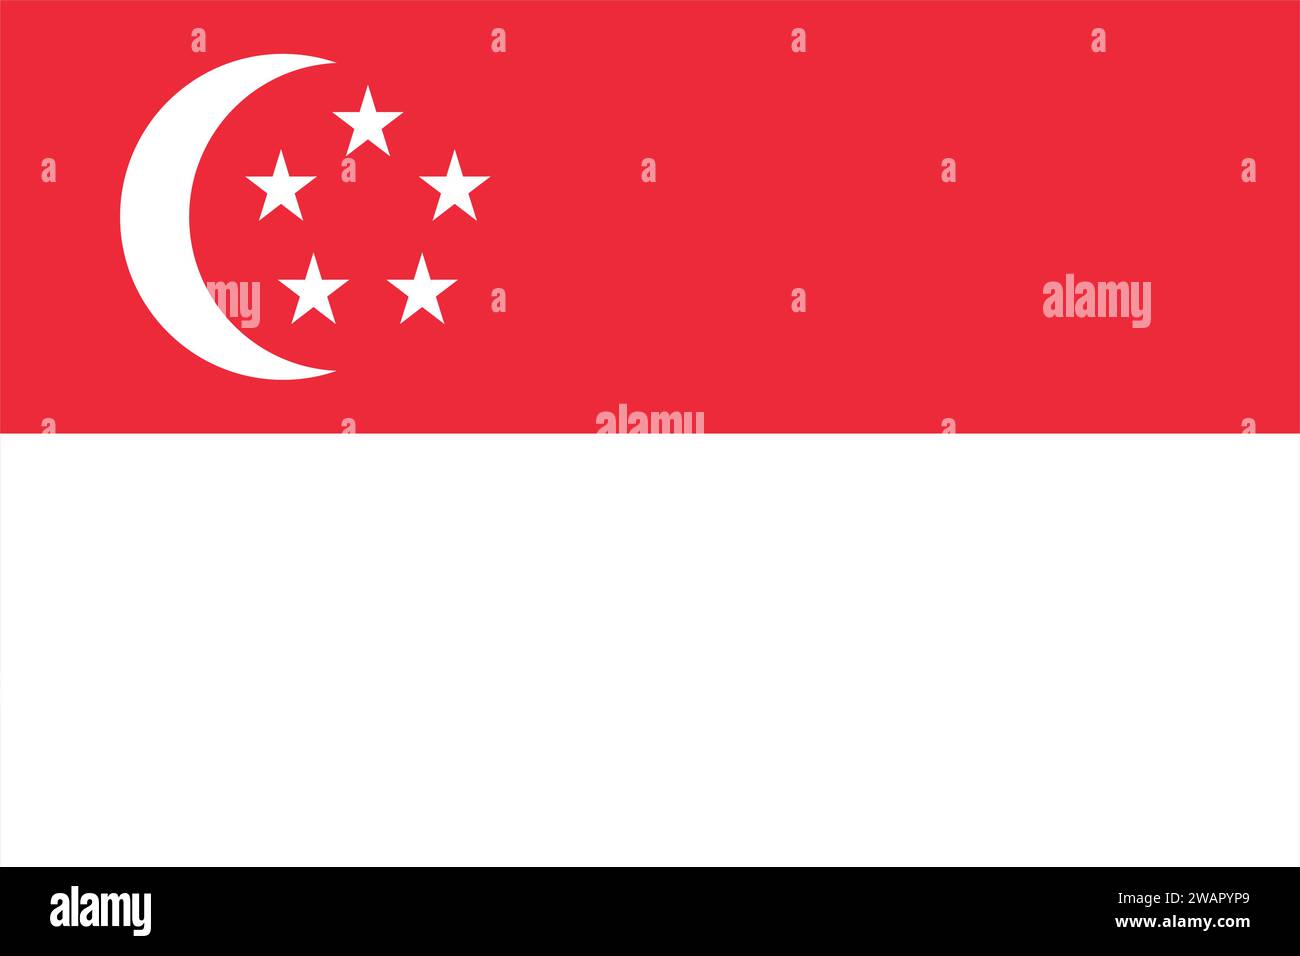 Alta e dettagliata bandiera di Singapore. Bandiera nazionale di Singapore. Asia. Illustrazione 3D. Illustrazione Vettoriale